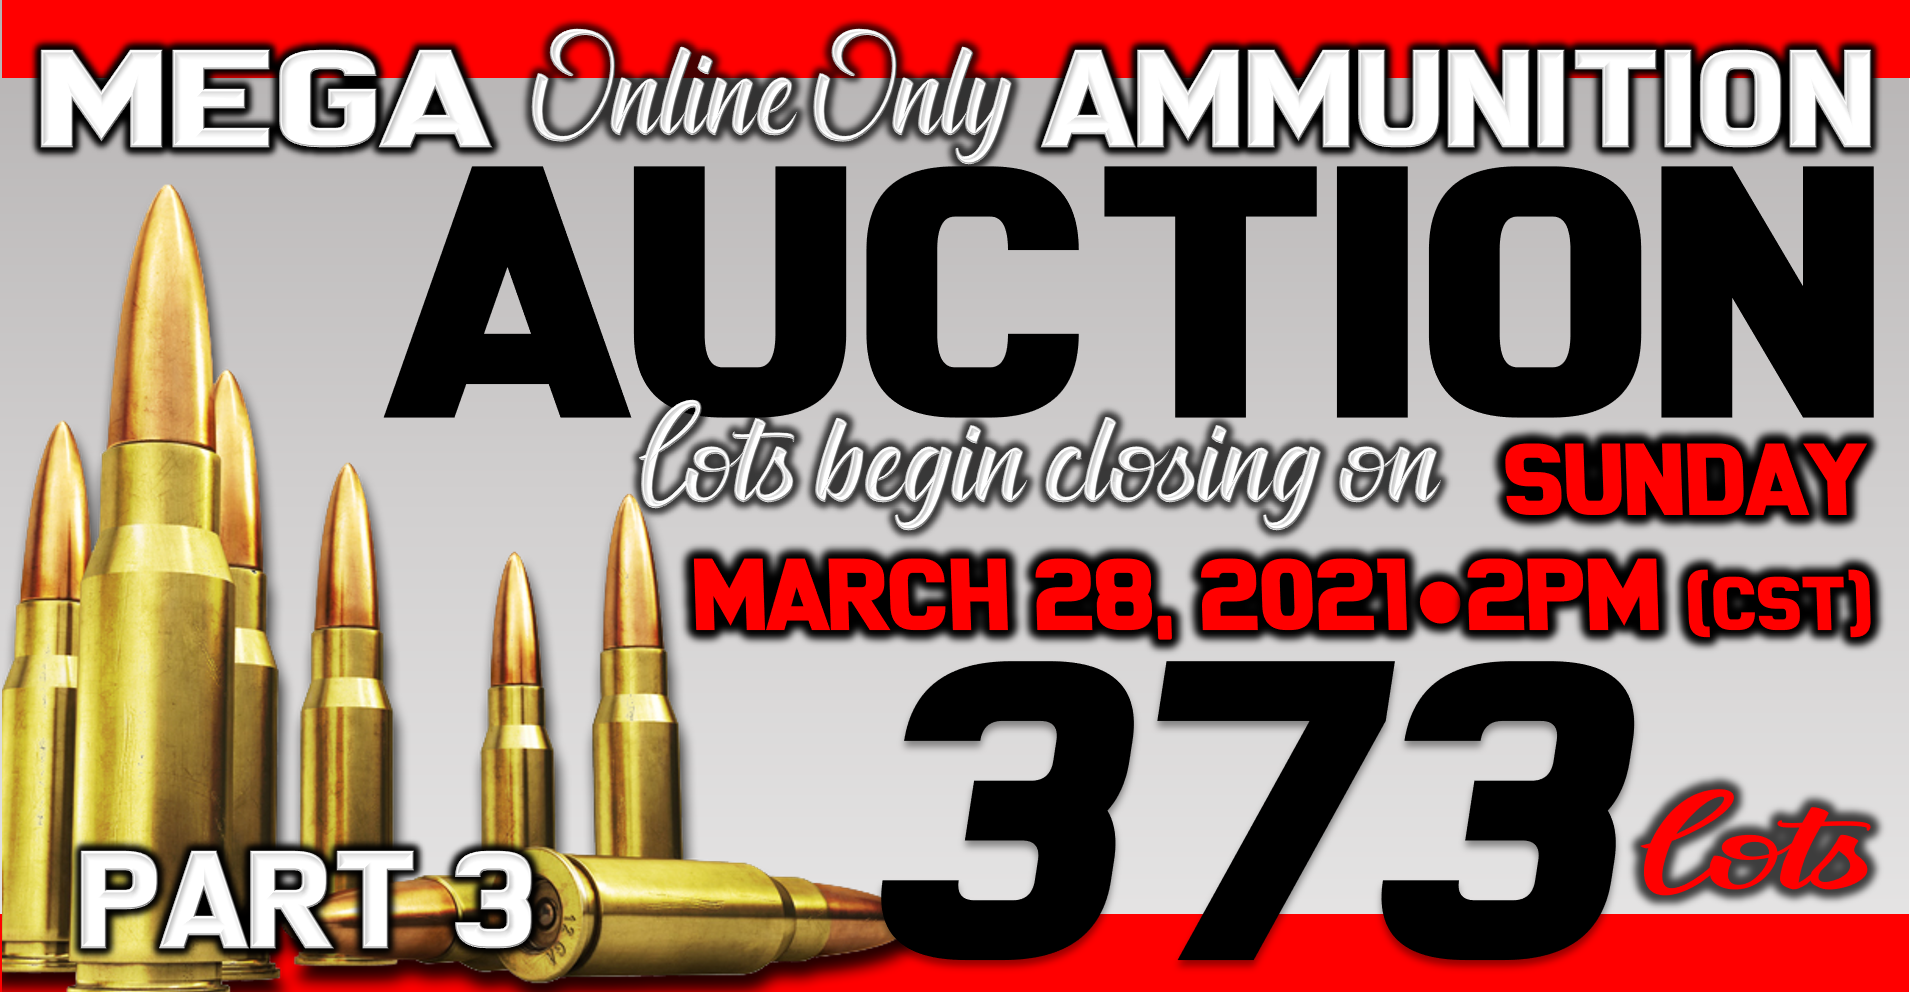 Online Only Ammunition Auction Part 3